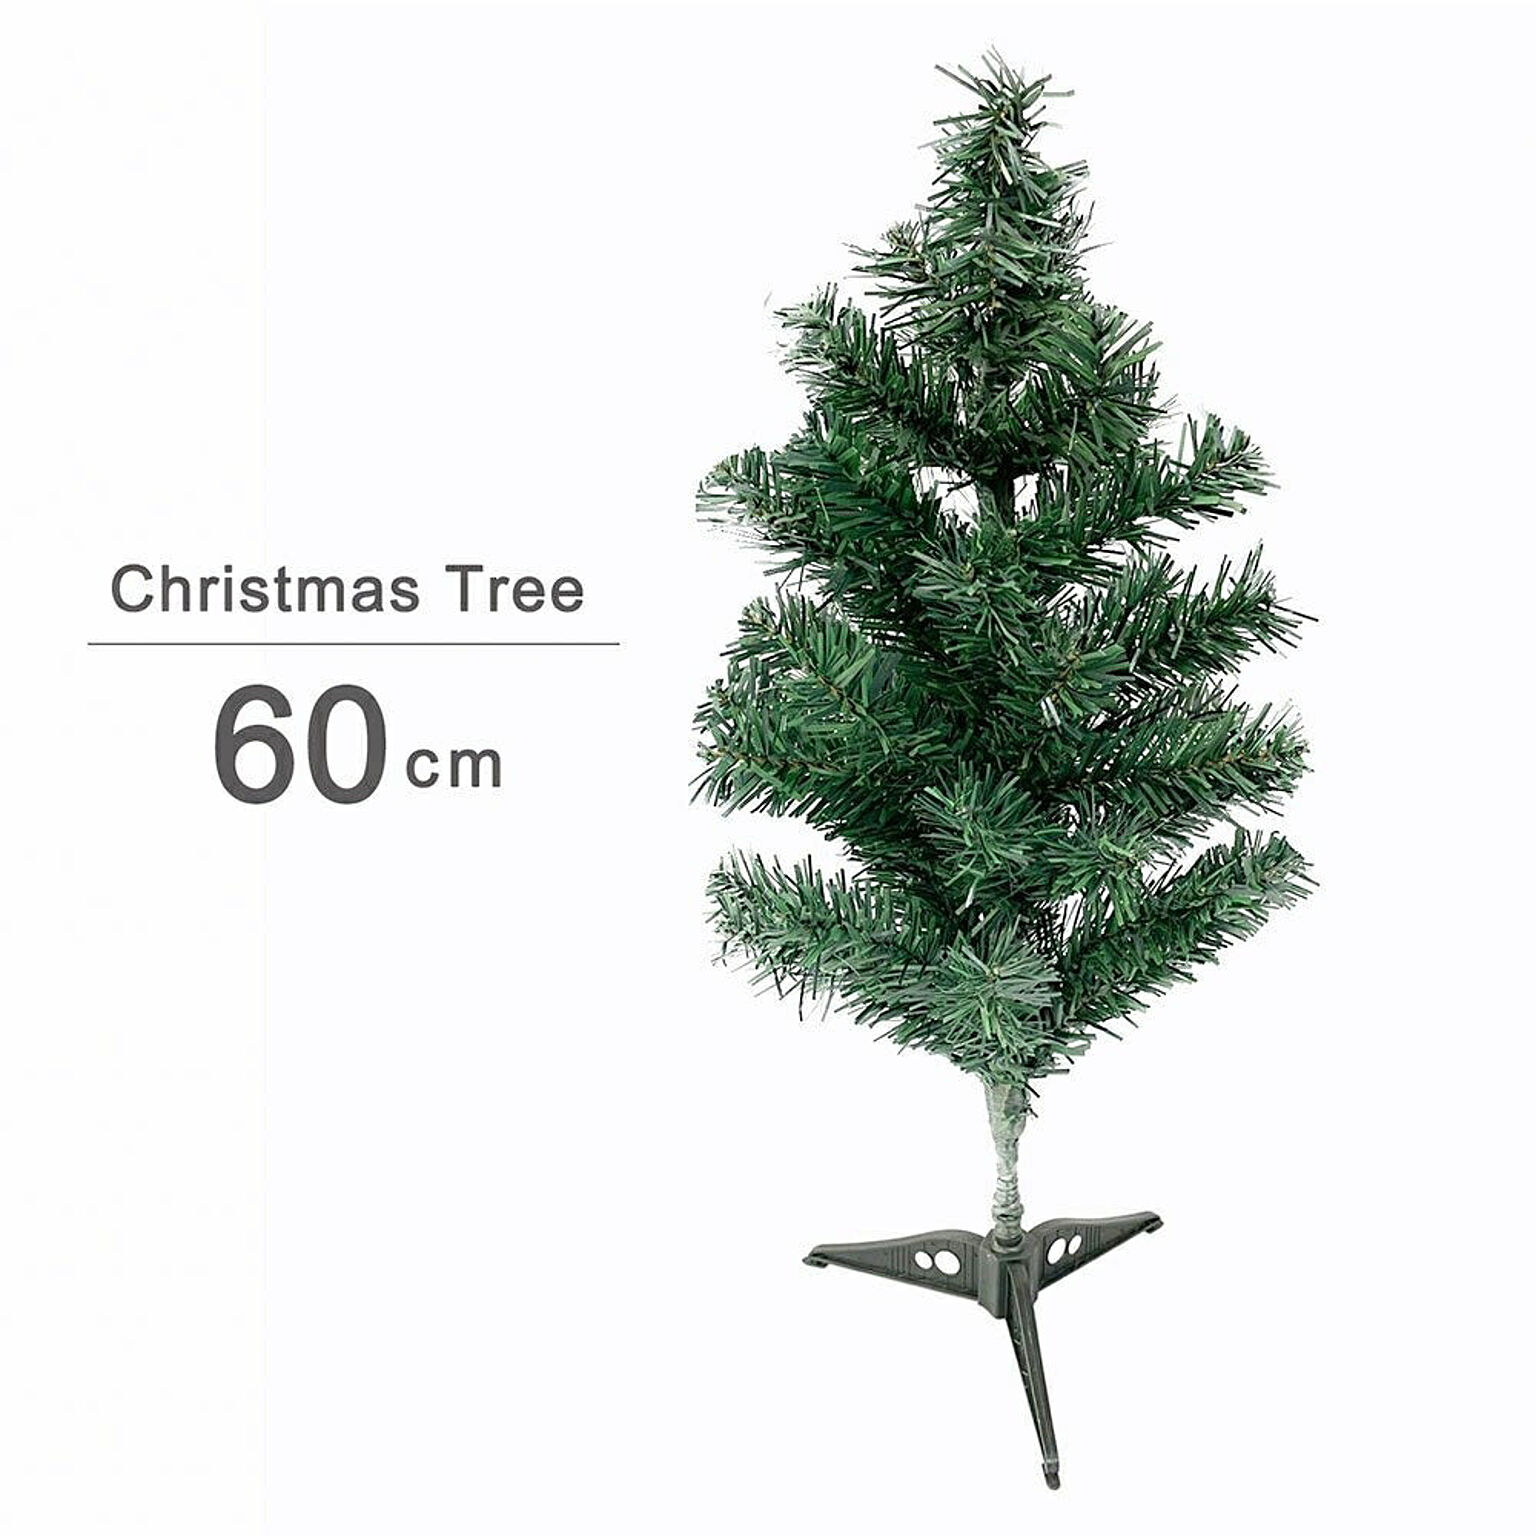 クリスマスツリー 装飾なし 60cm ツリー オーナメント 誕生日 飾り付け 室内 デコレーション 装飾 メリークリスマス